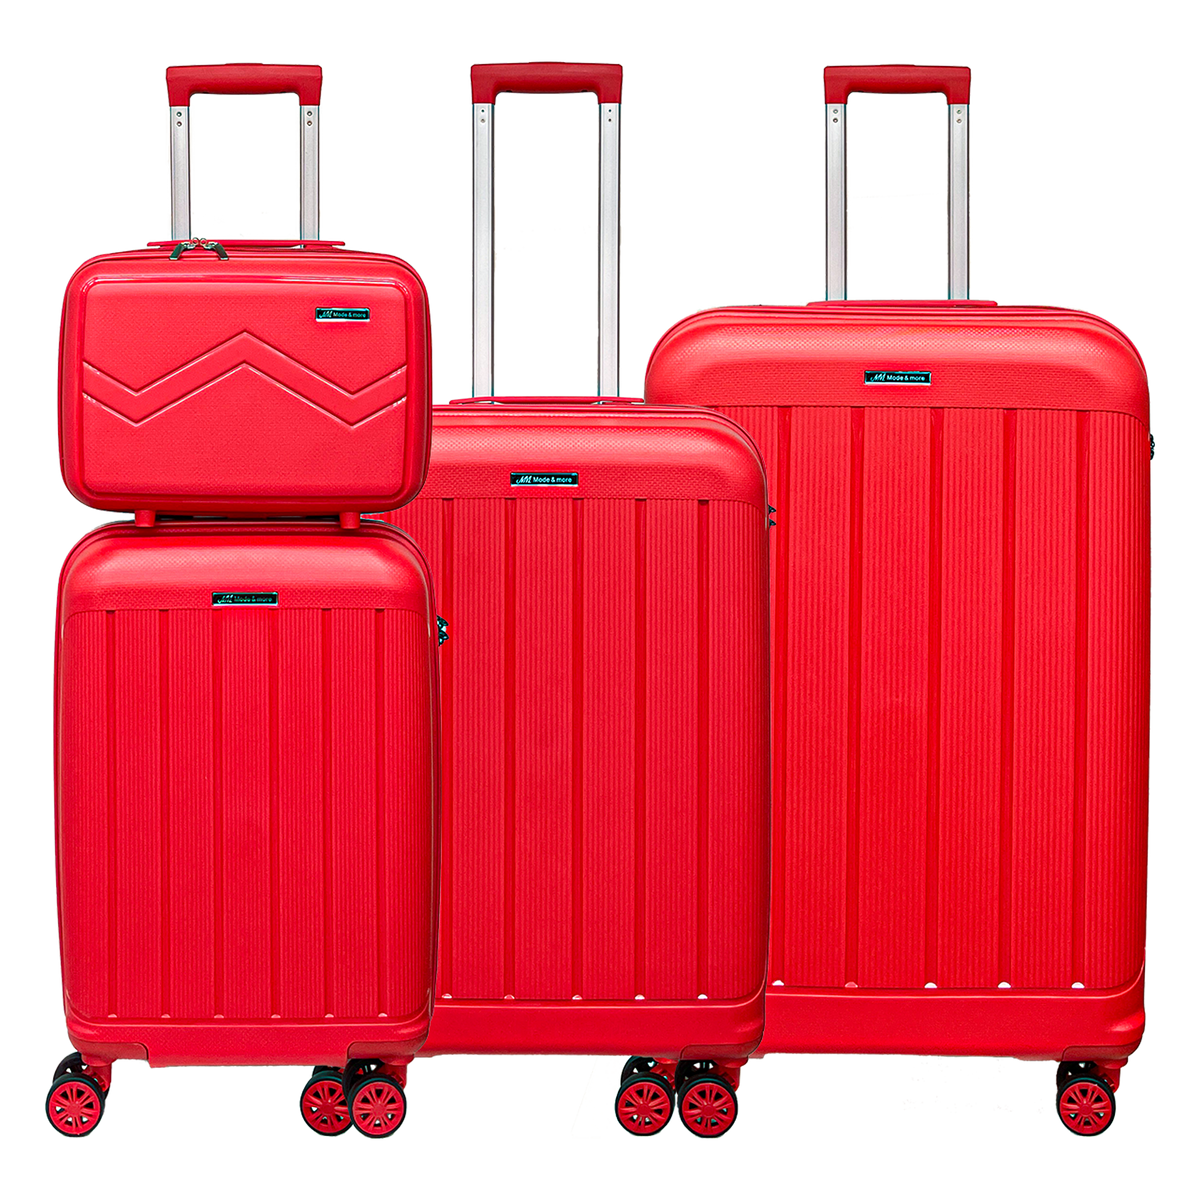 Ensemble 4 valises polypropylène souple léger, serrure TSA. Bagages haute qualité, très légers, avec trousse beauté